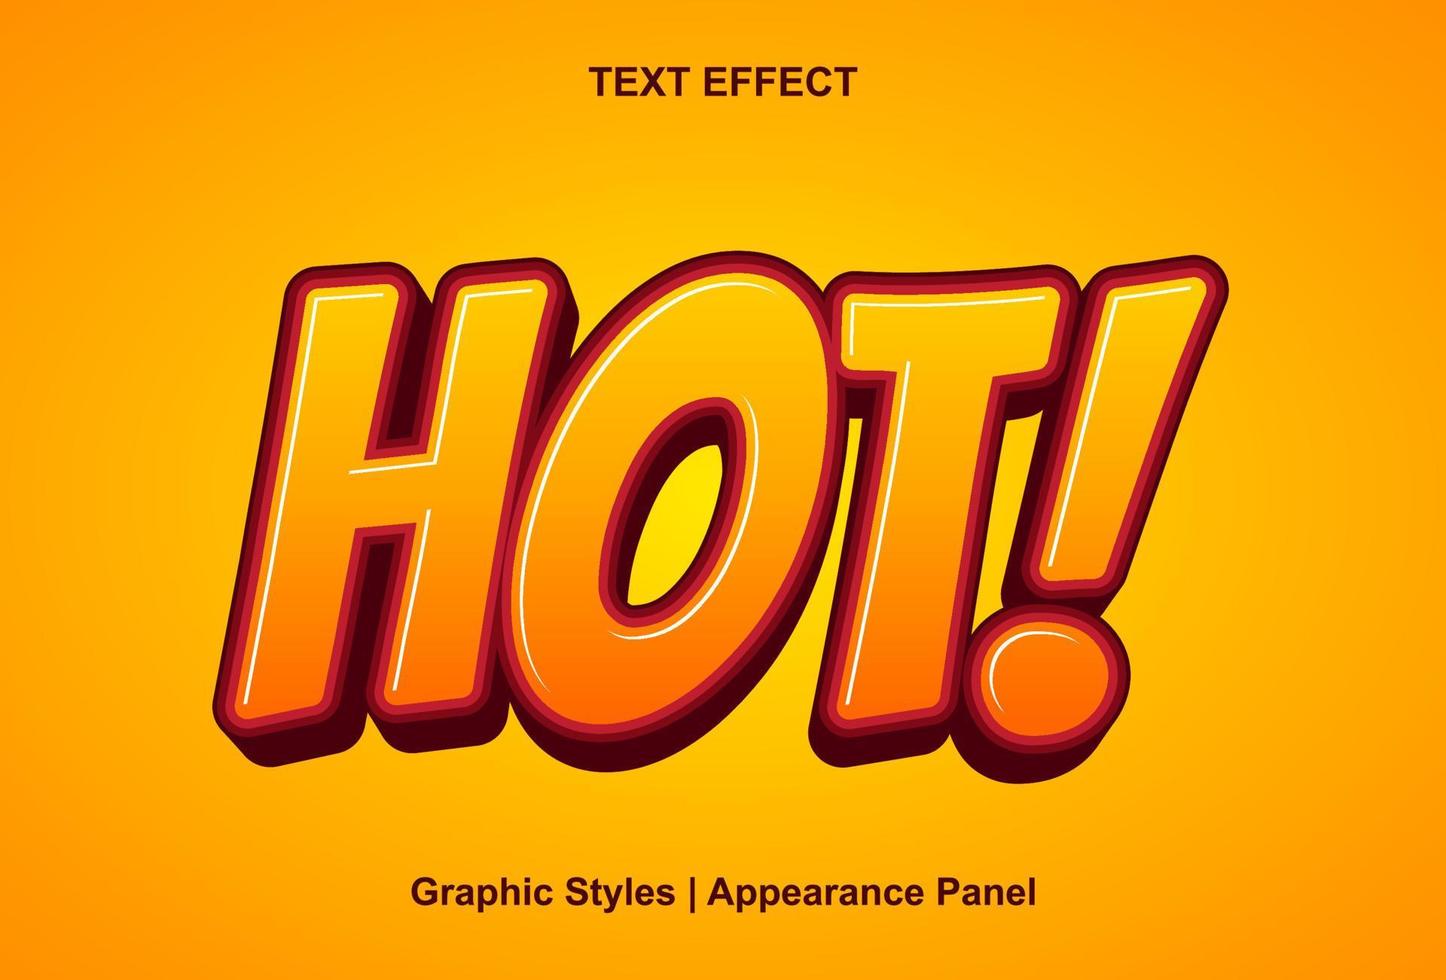 efecto de texto caliente con estilo gráfico y editable. vector